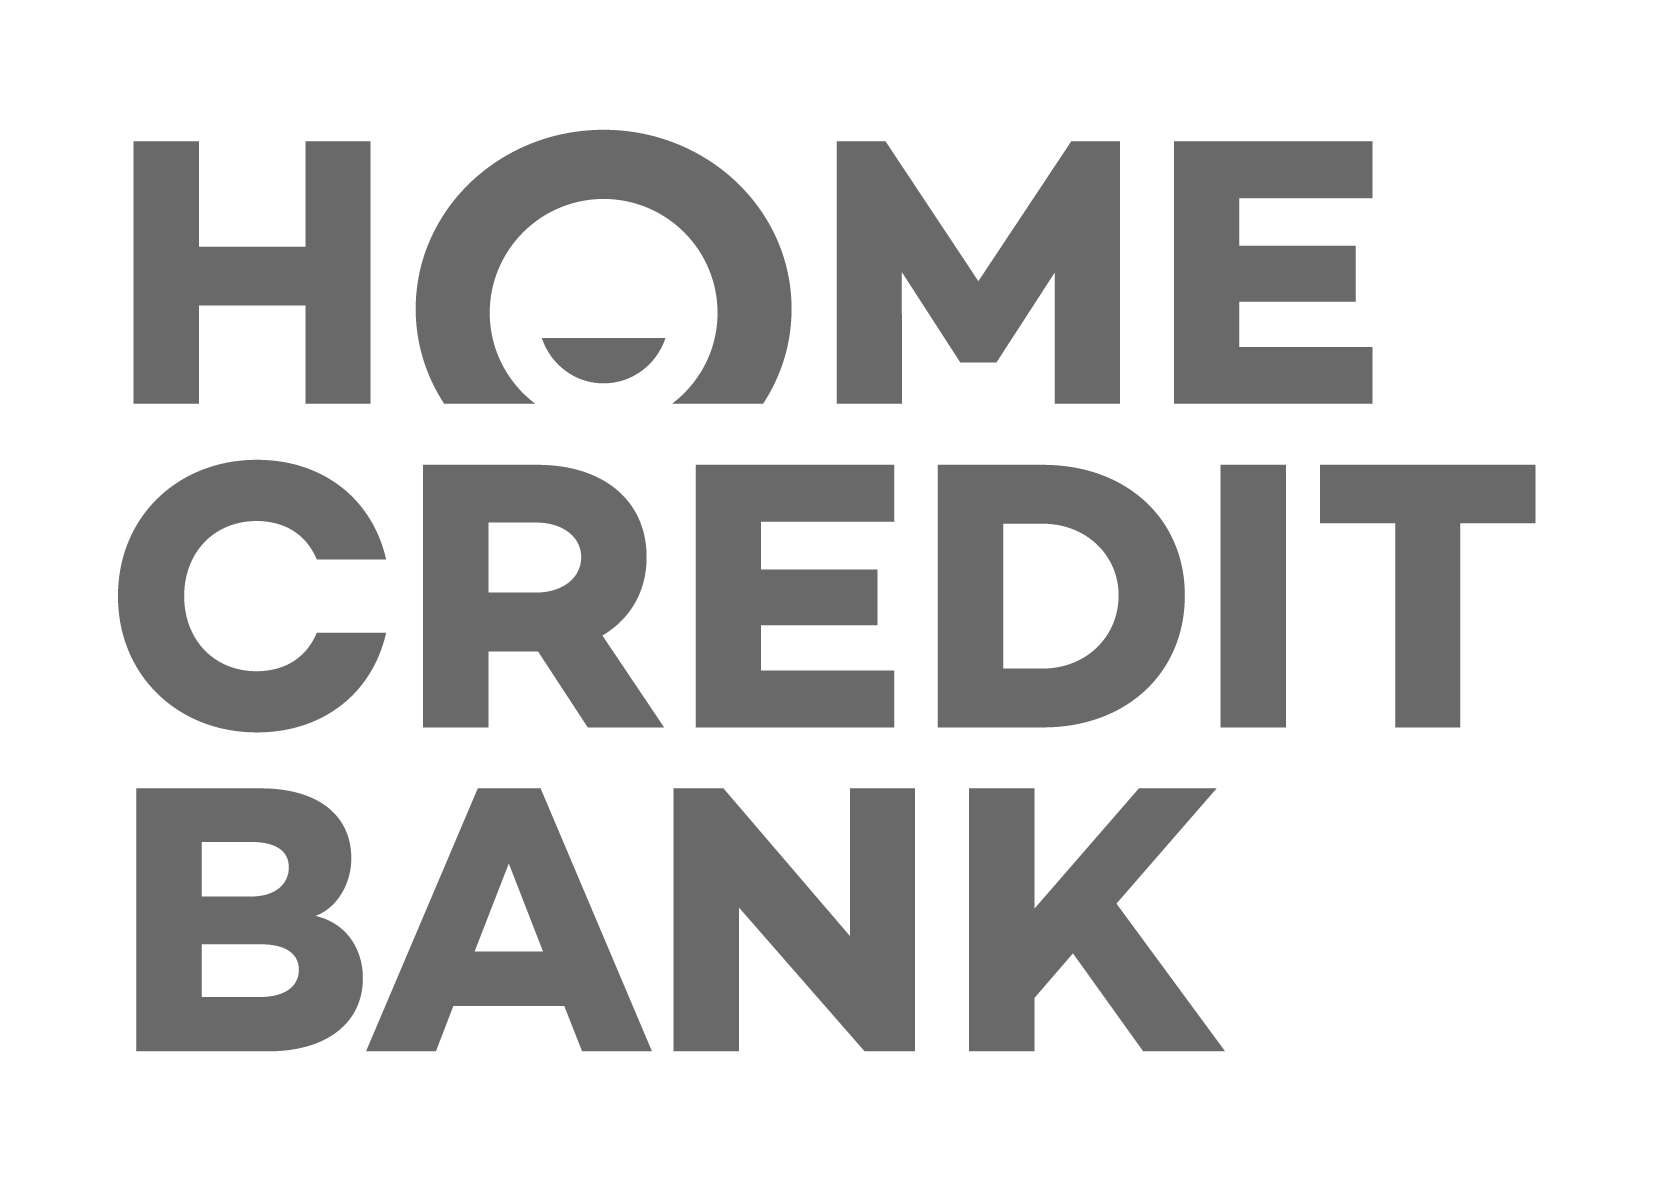 Ном кредит. Хоум эмблема. Хоум кредит банк эмблема. Хоум банк новый логотип. Логотип банка хоум кредит новый.